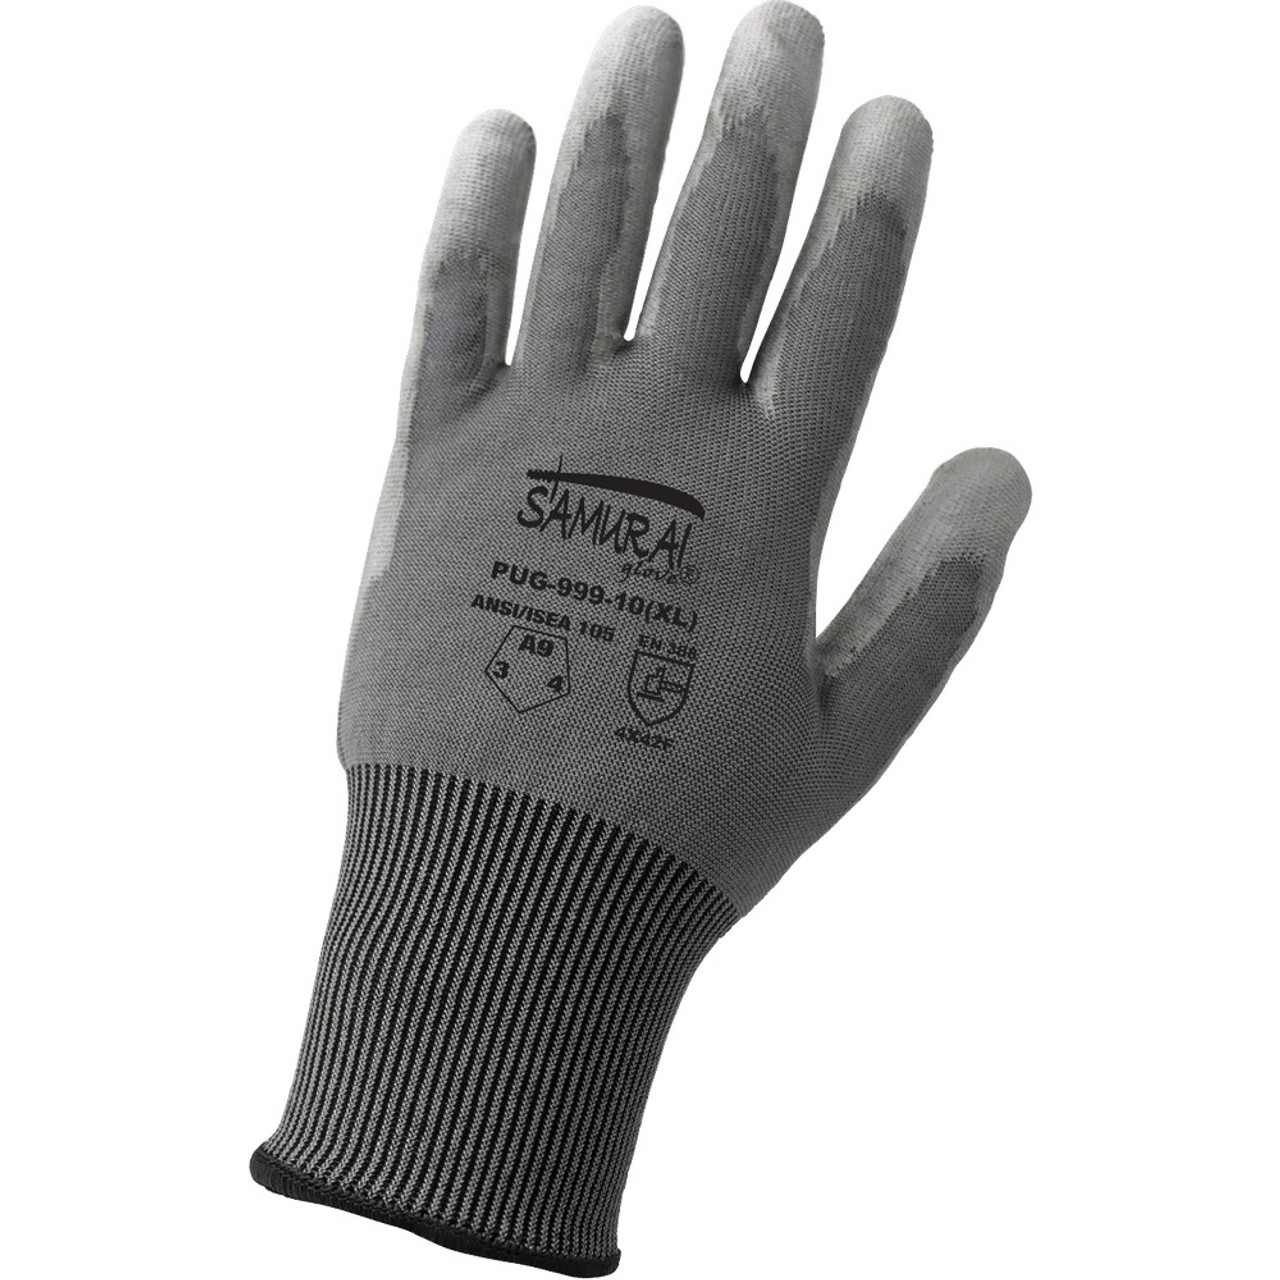 Global Glove PUG-999 Samurai Glove Smooth Polyurethane-Coated